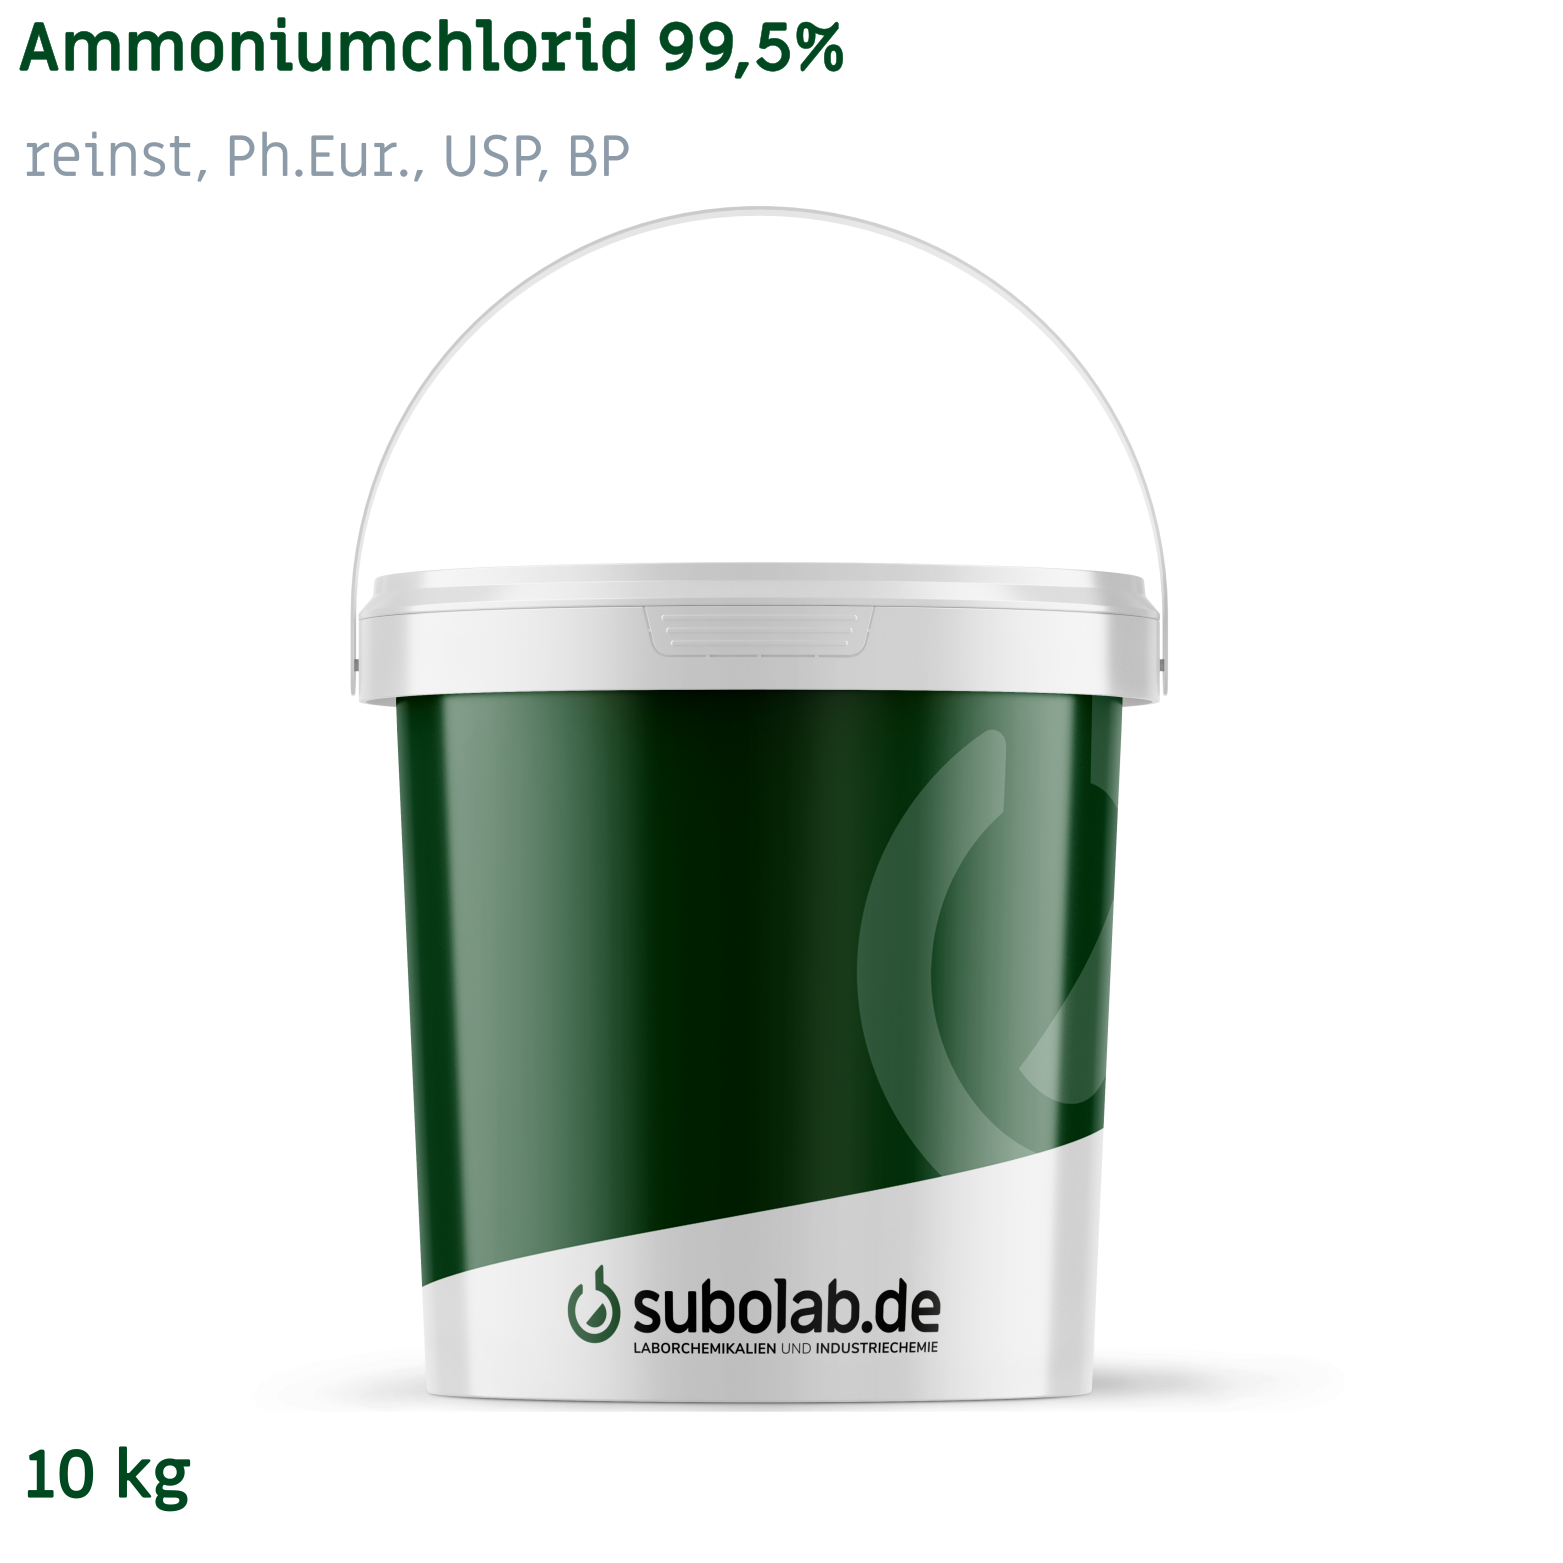 Bild von Ammoniumchlorid 99,5% reinst, Ph.Eur., USP, BP (10 kg)